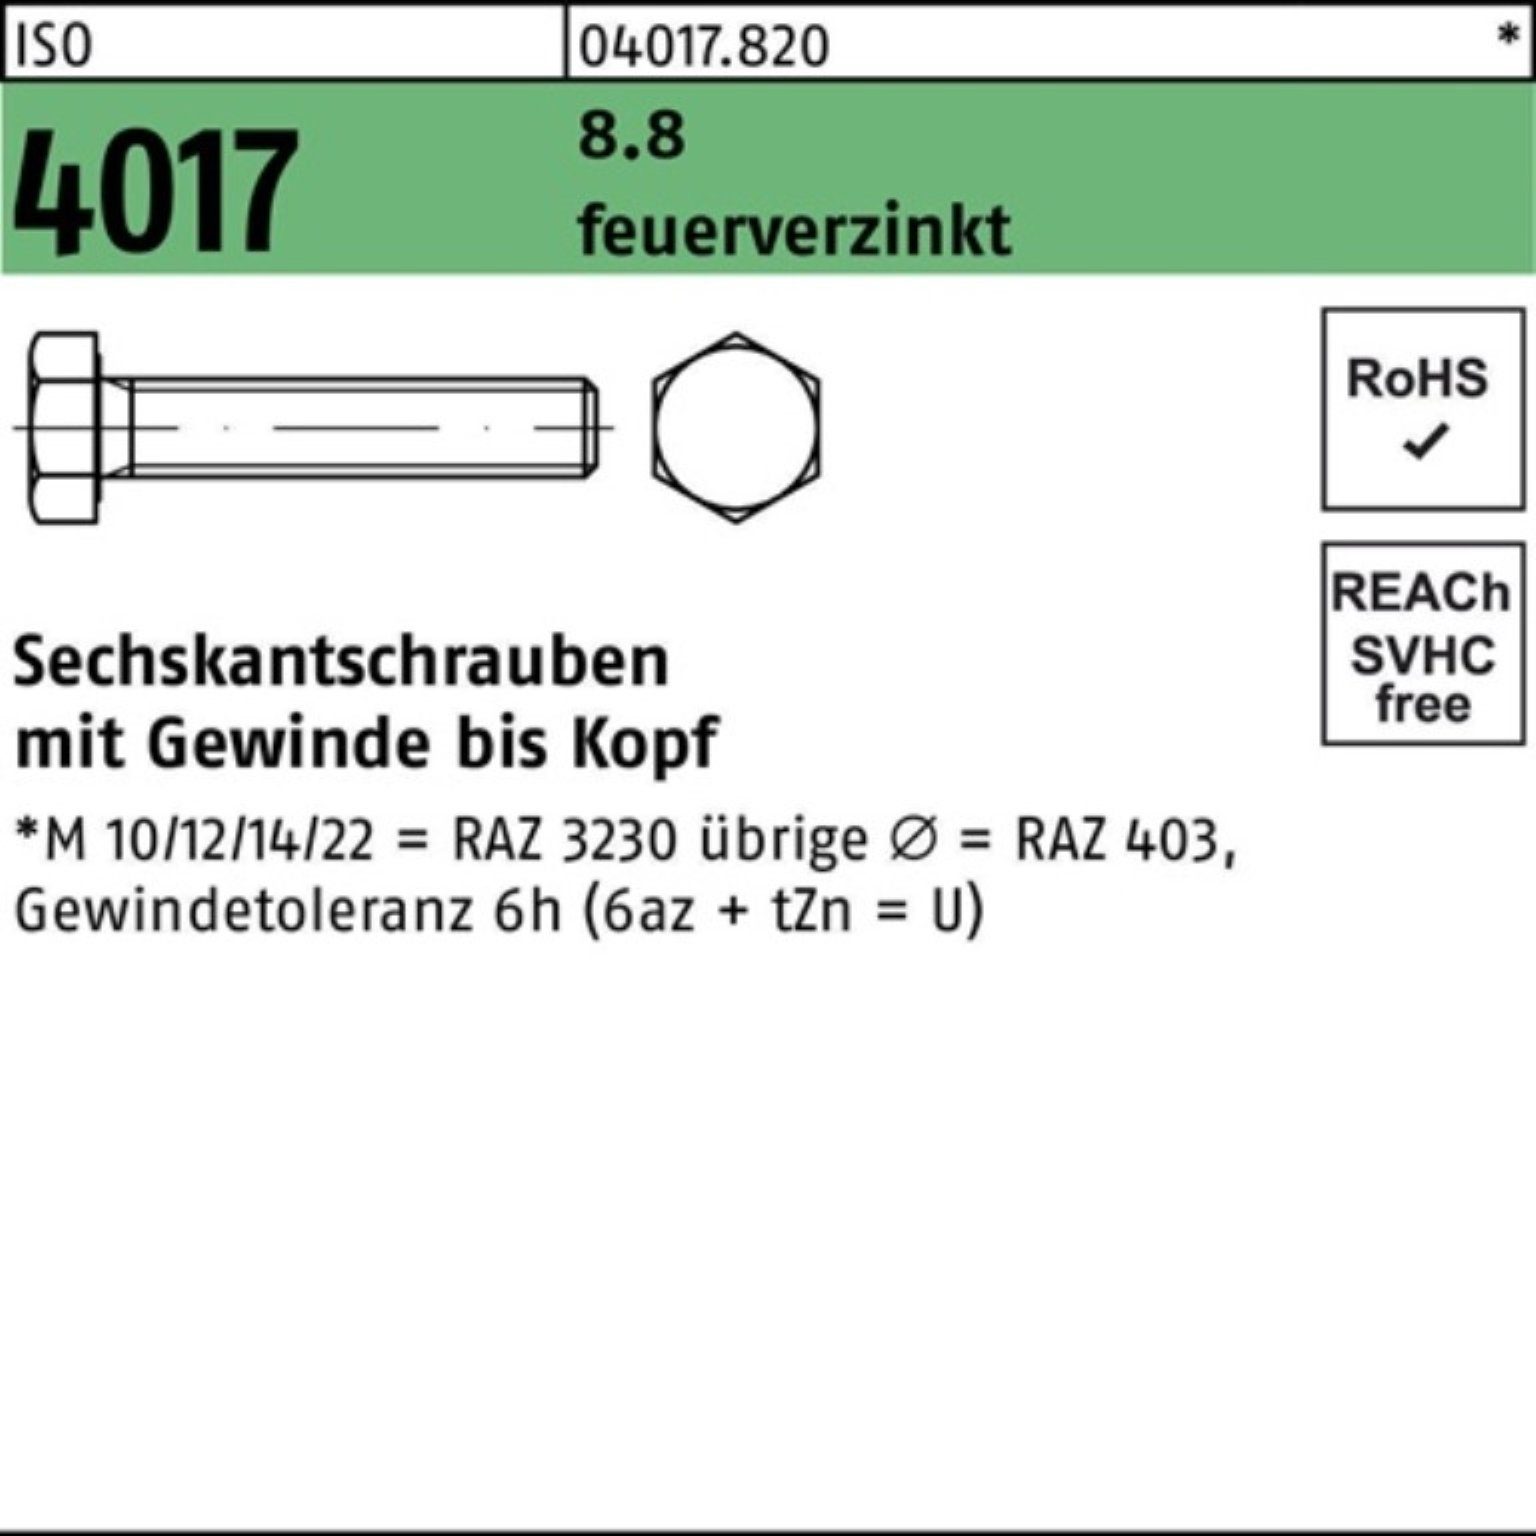 Sechskantschraube Sechskantschraube 100er Pack St Bufab feuerverz. 8.8 45 VG ISO 100 4017 M12x